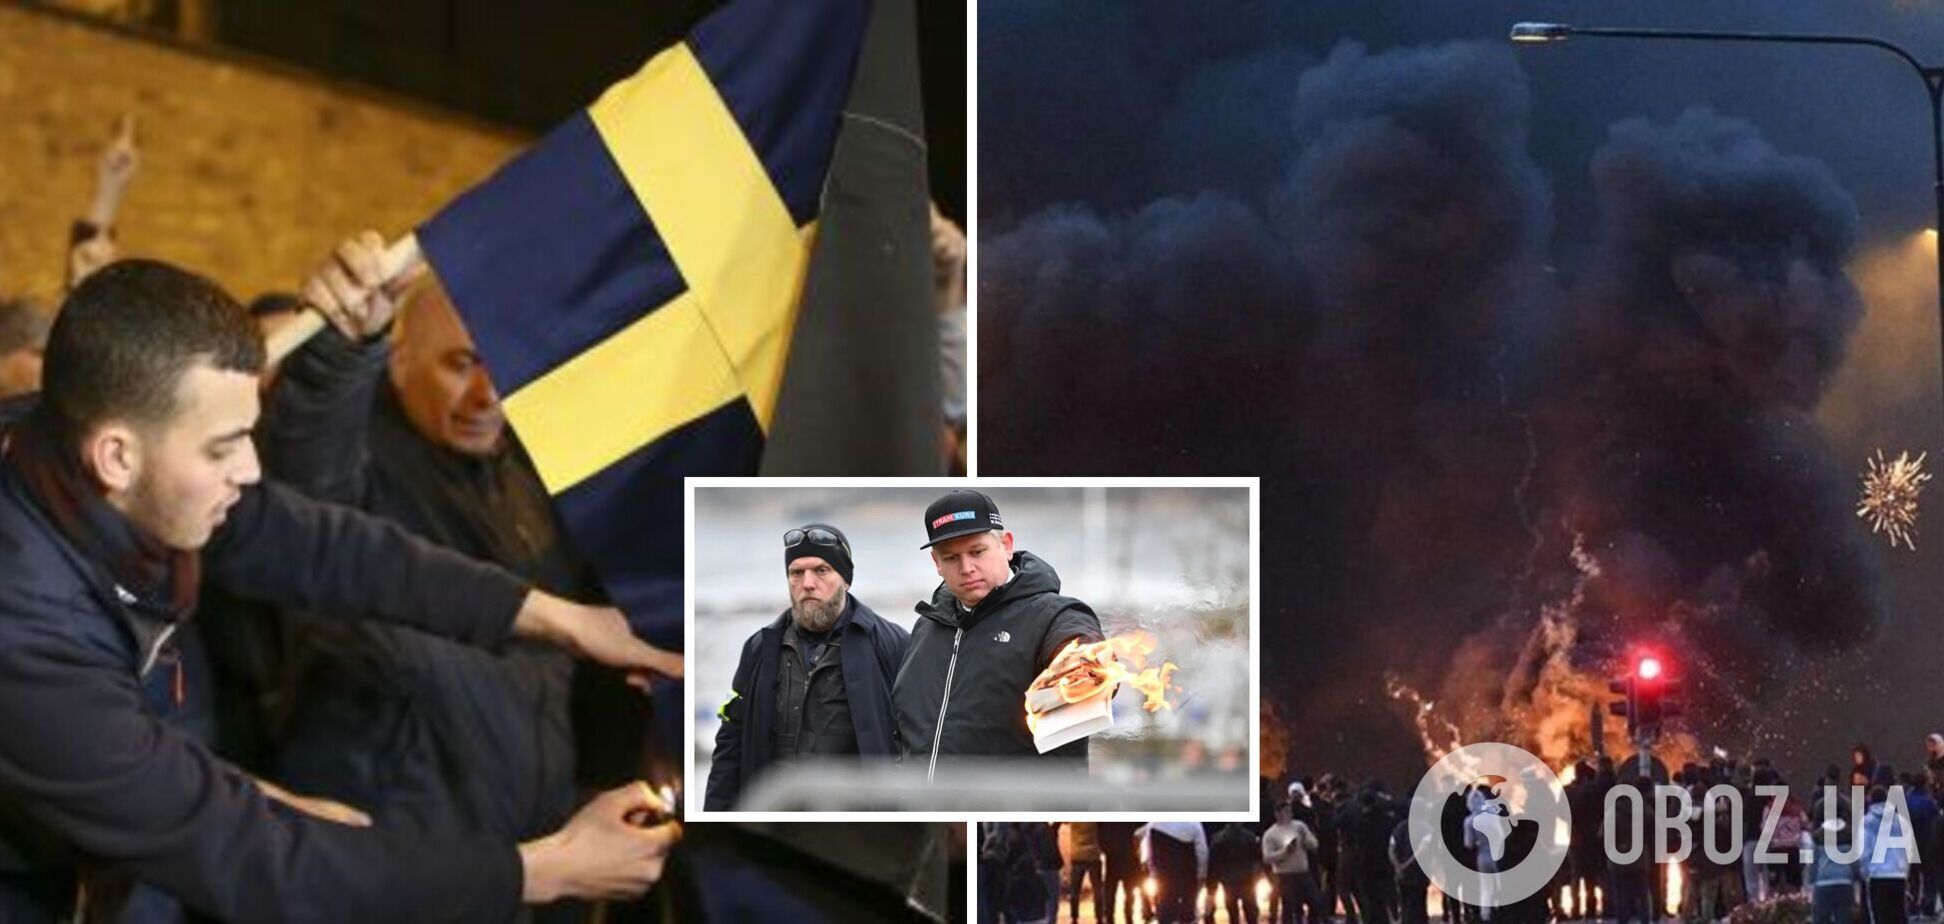 За сожжением Корана в Стокгольме может стоять Россия